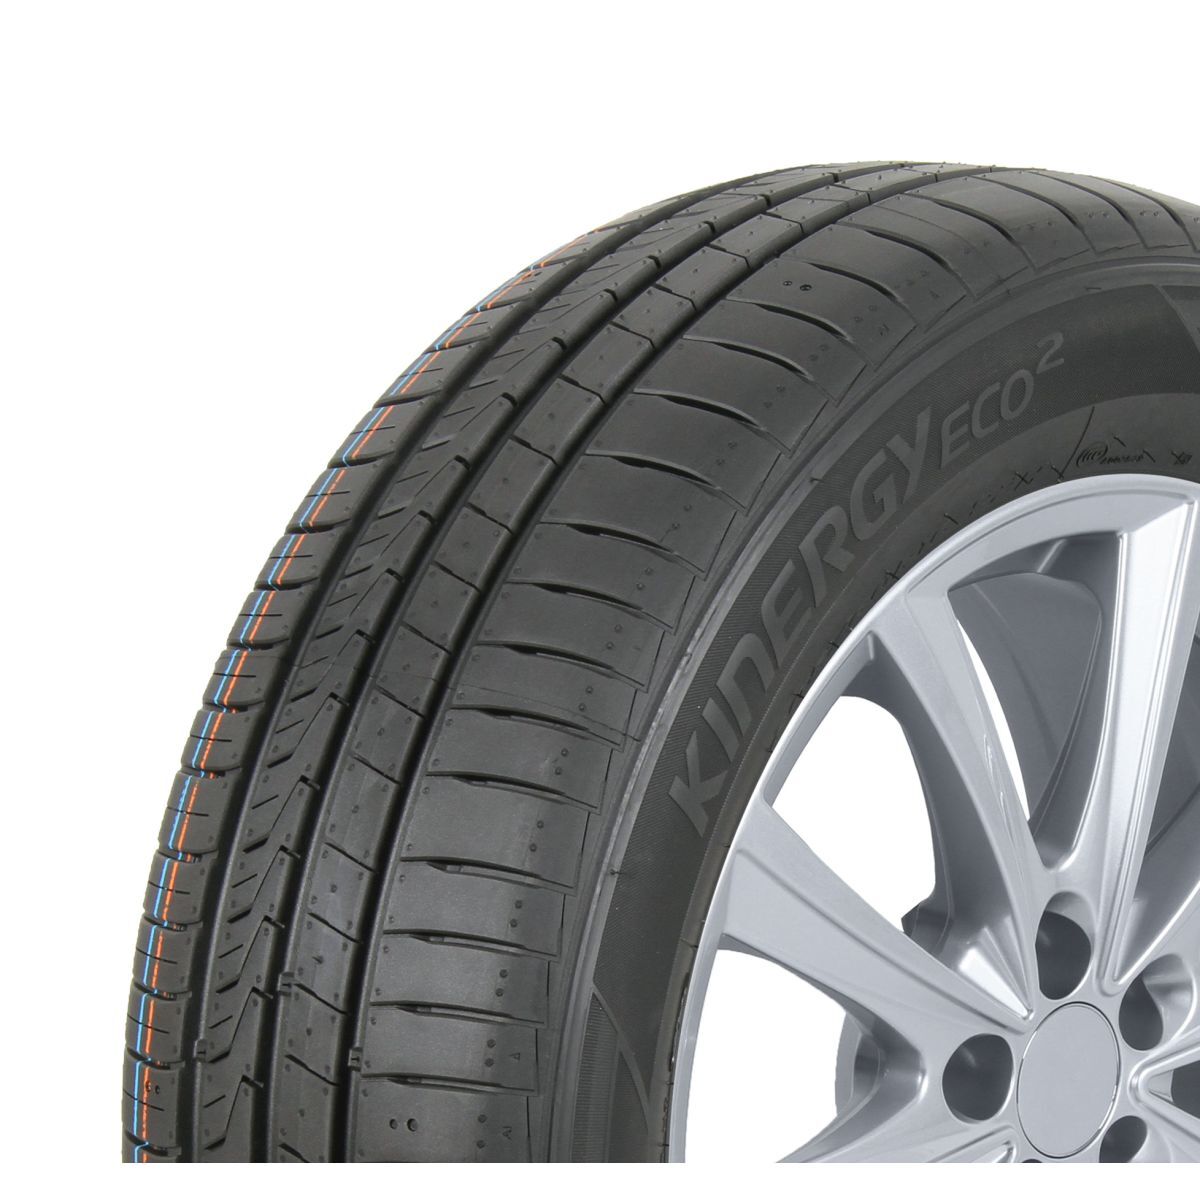 Neumáticos de verano HANKOOK Kinergy eco2 K435 195/70R14 91T